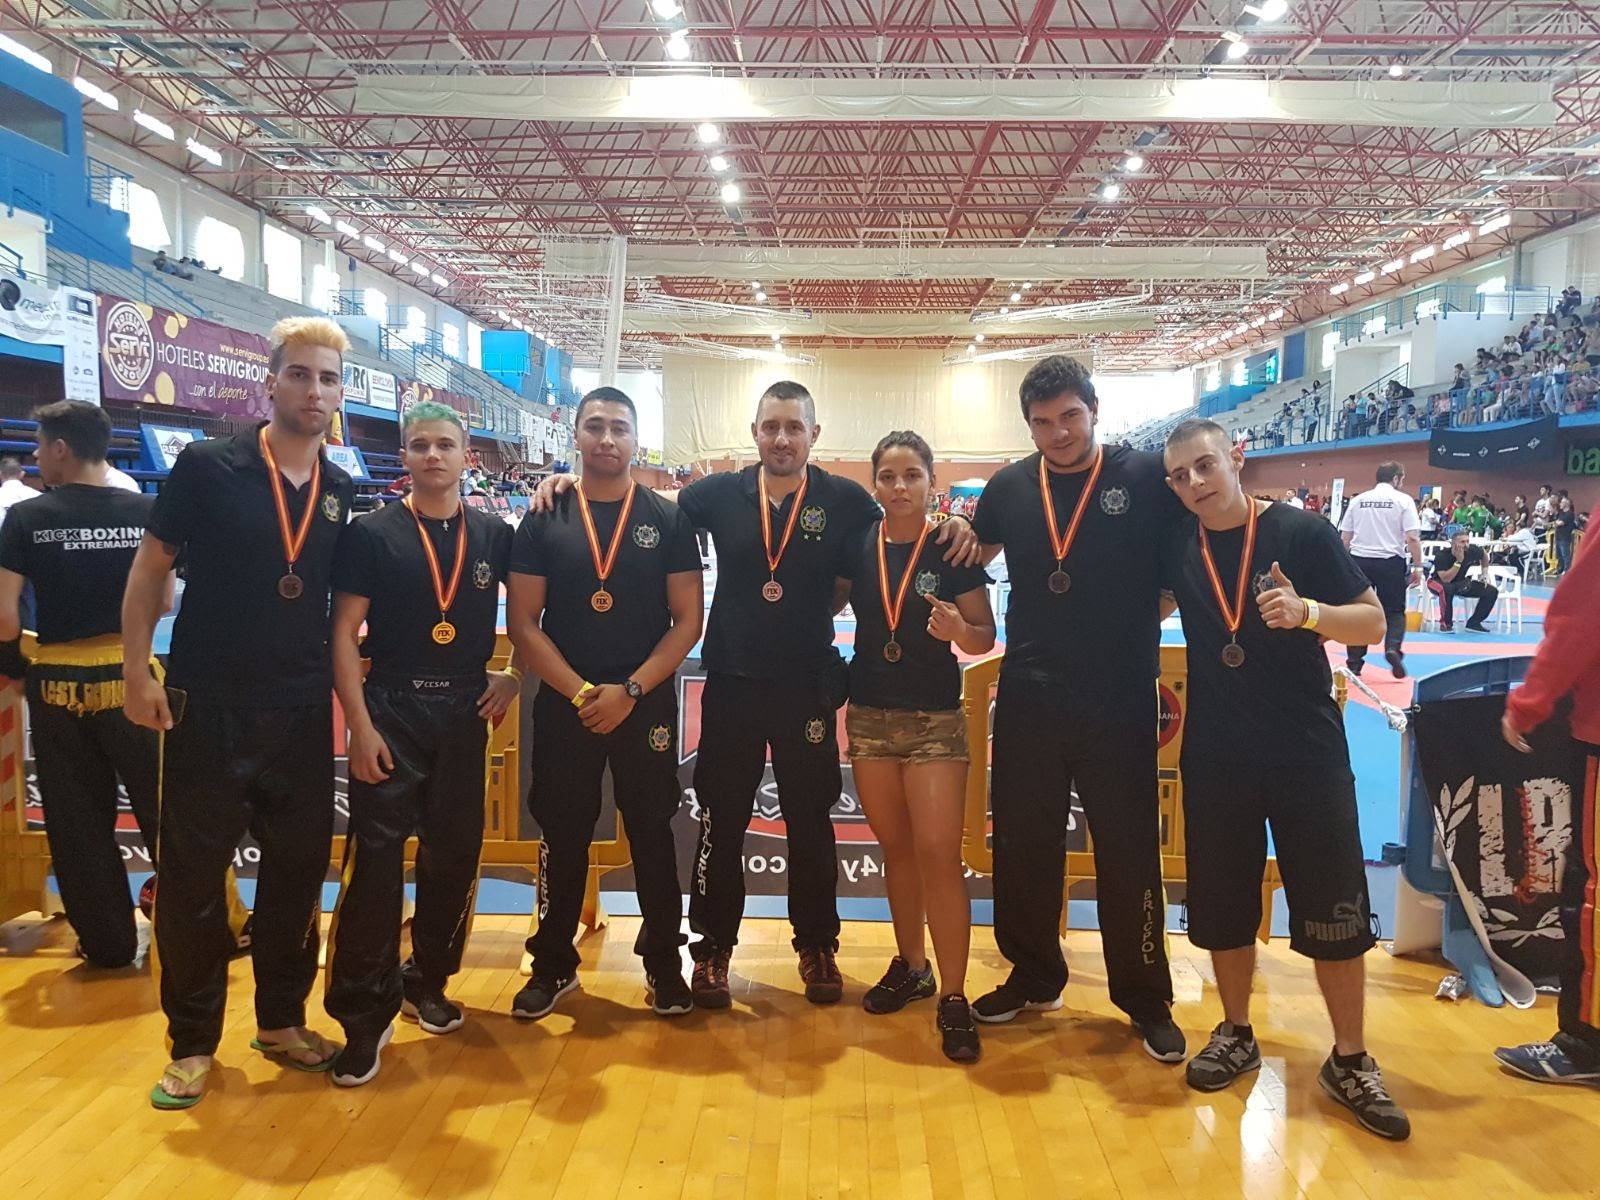 El equipo de Defensa Personal, Bricpol Segovia, consigue siete medallas en el Campeonato de España de Bricpol